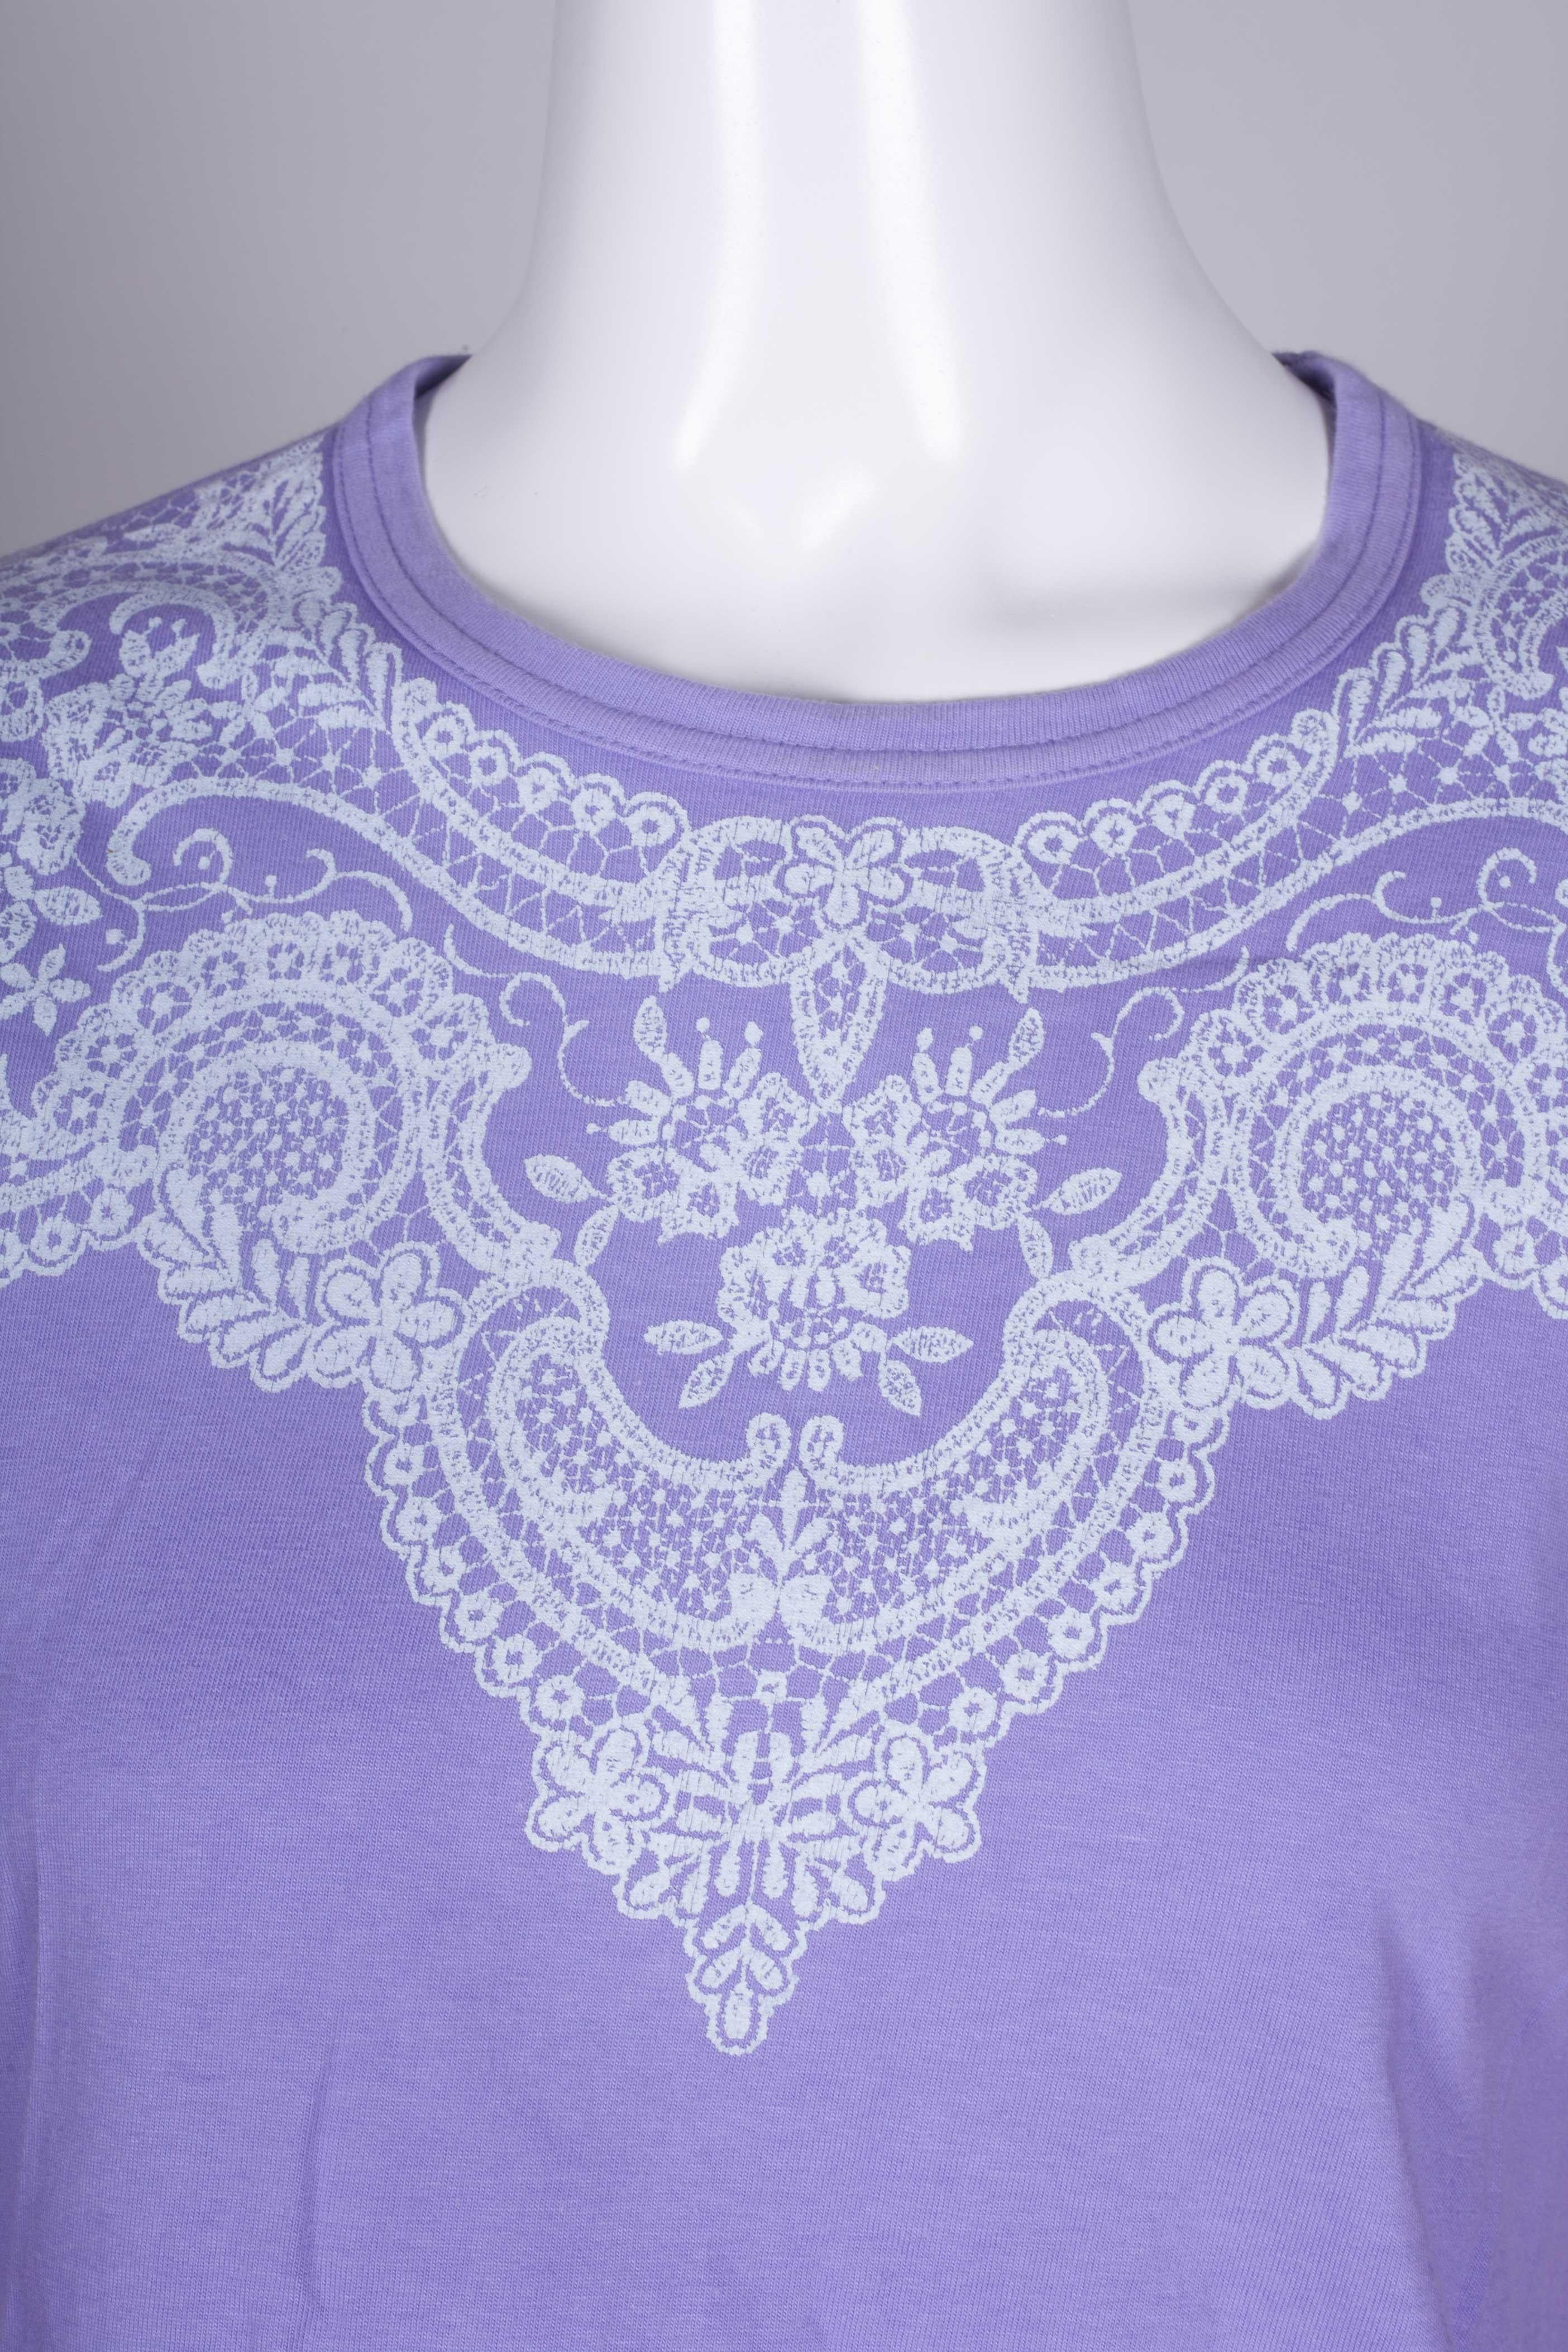 Comme des Garçons Purple T-shirt with Lace Motif, 2006 3